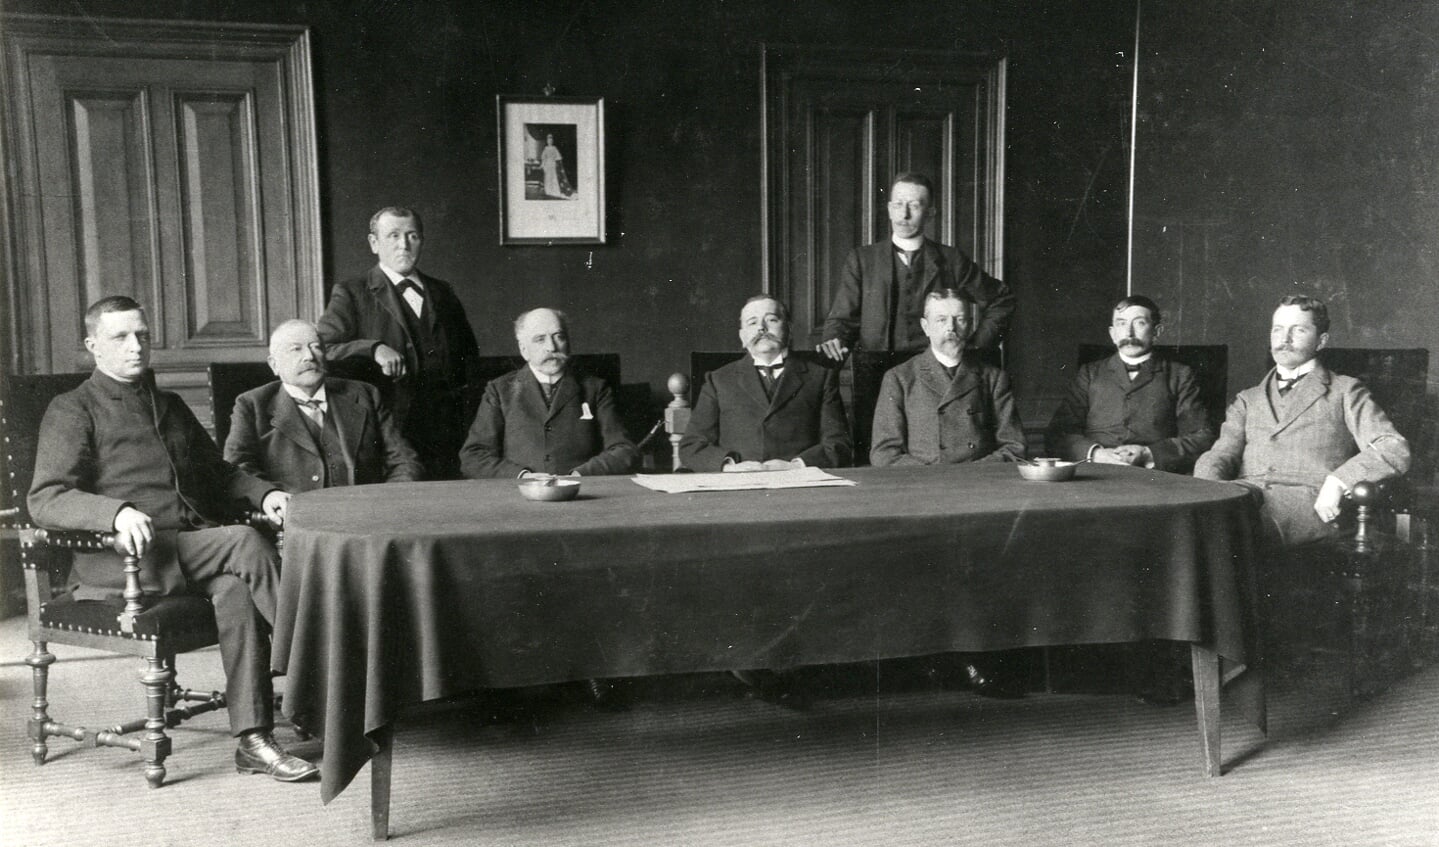 Een foto van de gemeenteraad van 1909 -1911, allen in stemmige kleding poserend. Zittend v.I.n.r. S. Floor (1900-1911) r.lid; Jhr. Mr. D. de Blocq van Haersma de With (1879-1907) burgerm. en (1882-1915) r.lid; M. v. Marwijck Kooij (1895-1913) r.lid; H. Ph. J. baron 
van Heemstra (1907-1927) burgem.; Mr. J.E.W. Twiss (1887-1917) r.lid.; P.N. Hoogland (1905-1931) r.lid; C.L. baron van Boetzelaer (1900-1931) r.lid. Staand (l) T. Meijer (1900-19